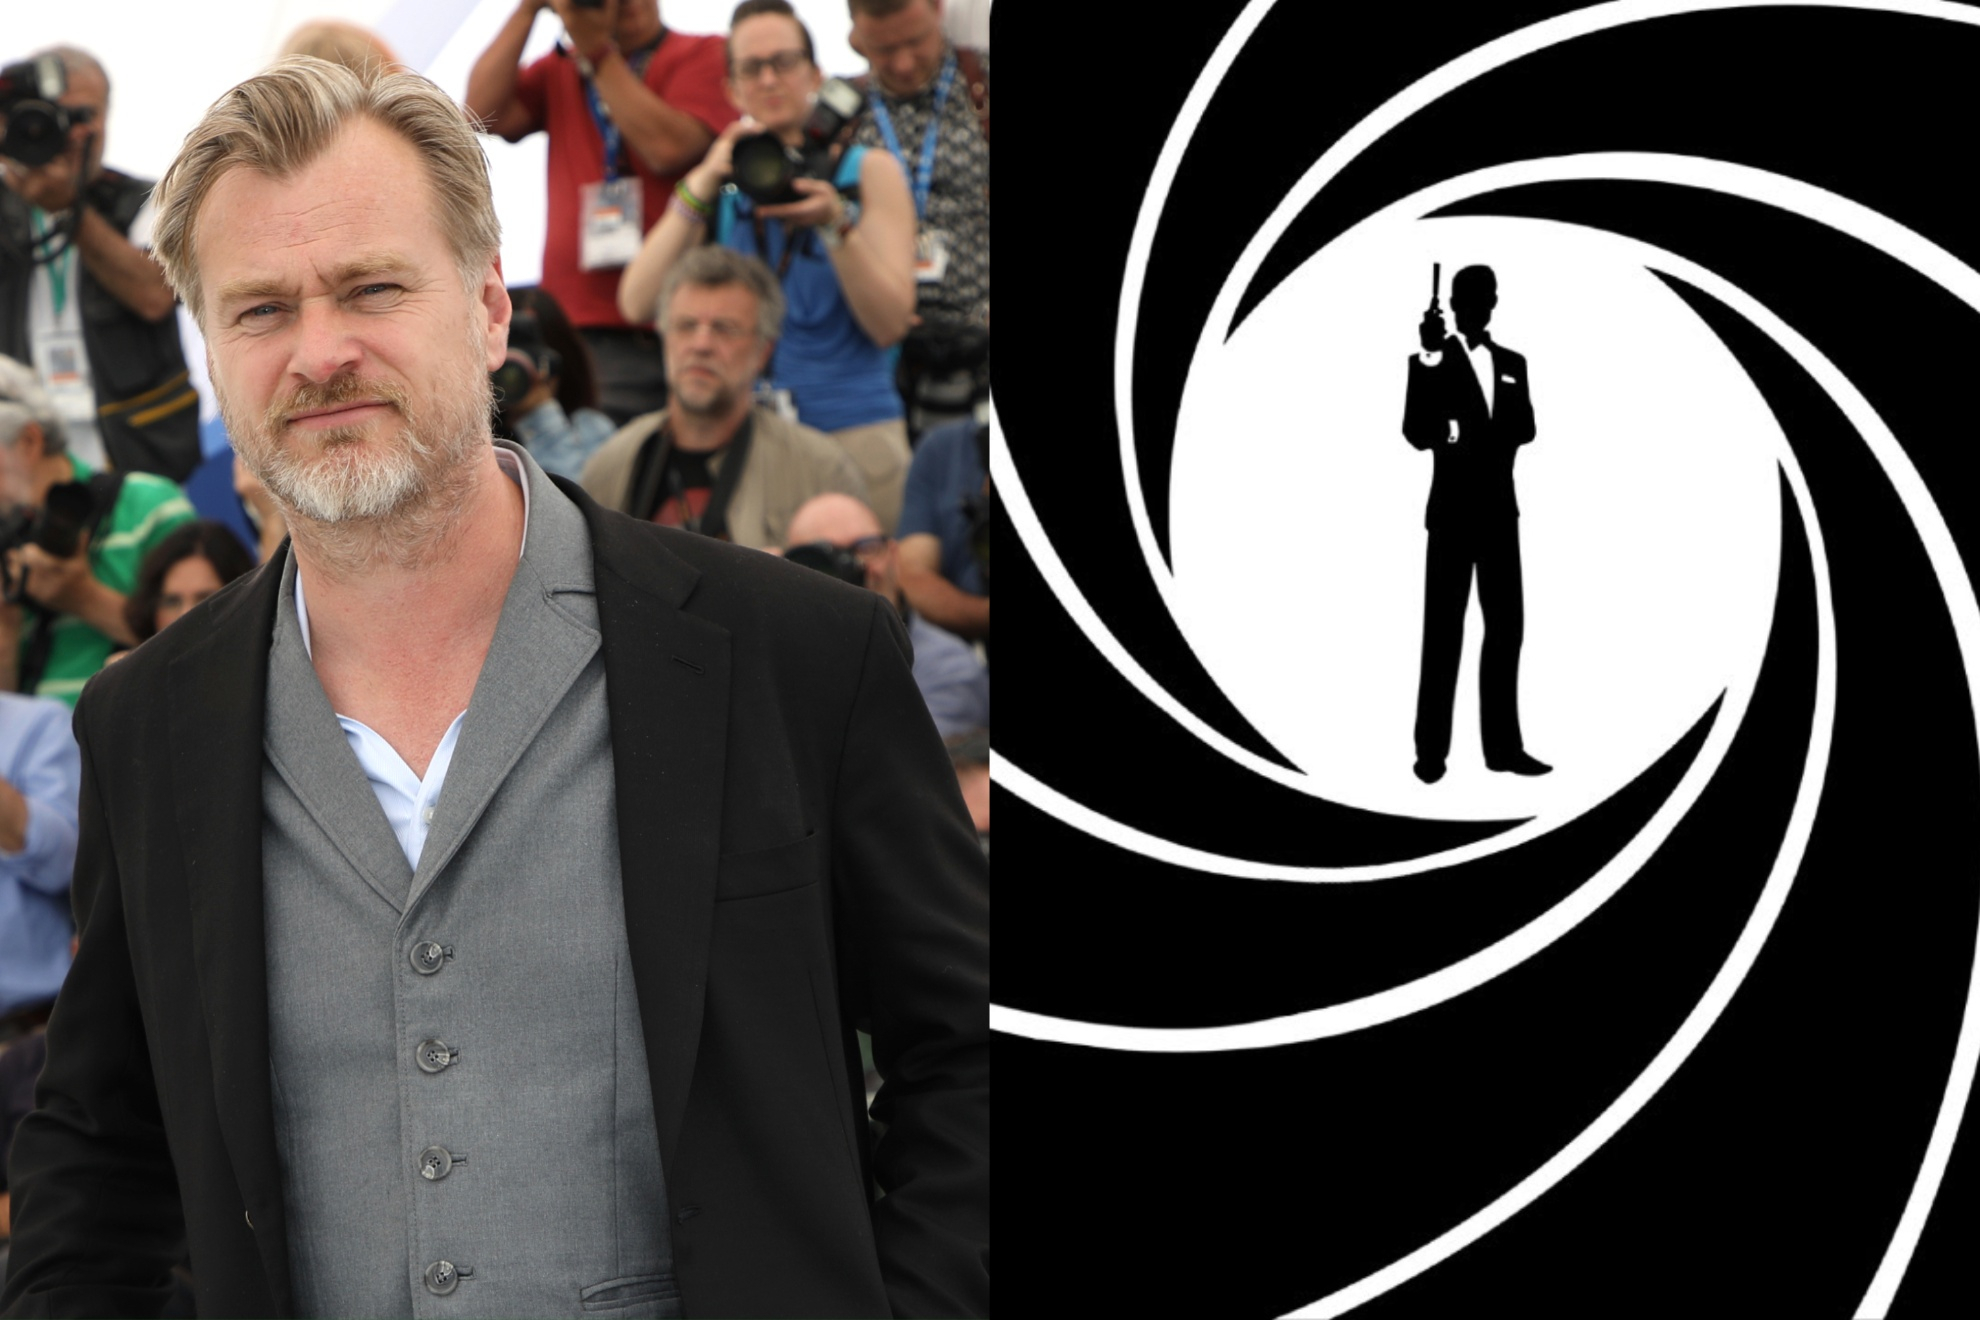 Mashup image of Christopher Nolan and James Bond